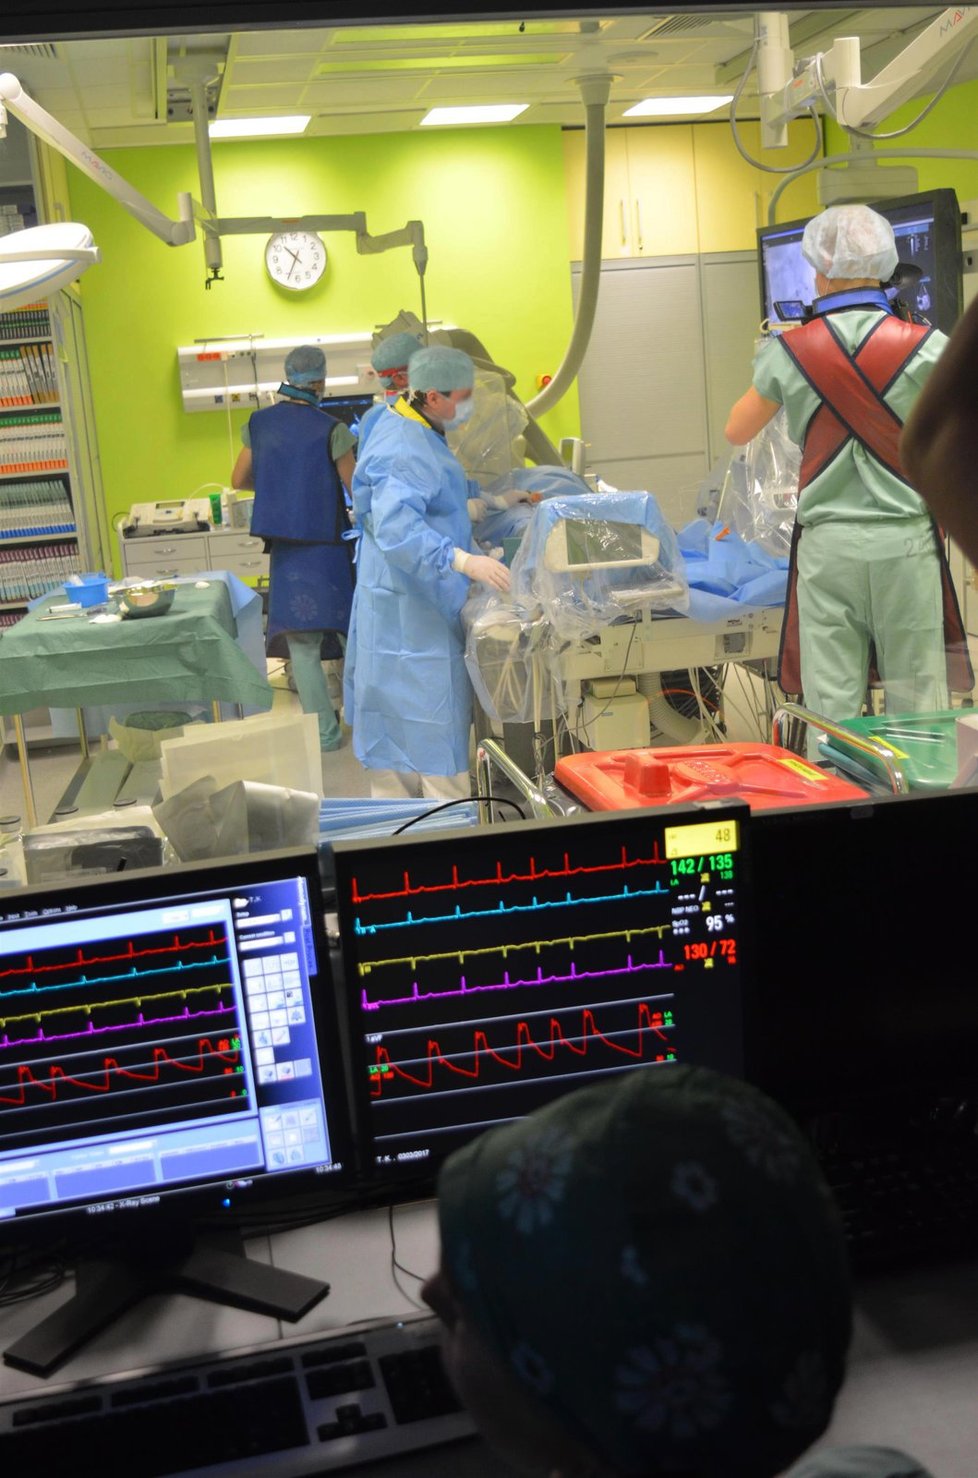 Tým MUDr. Petra Kaly použil nový ultrazvukový přístroj s mimořádně přesným zobrazením pacientova těla i samotného zákroku.